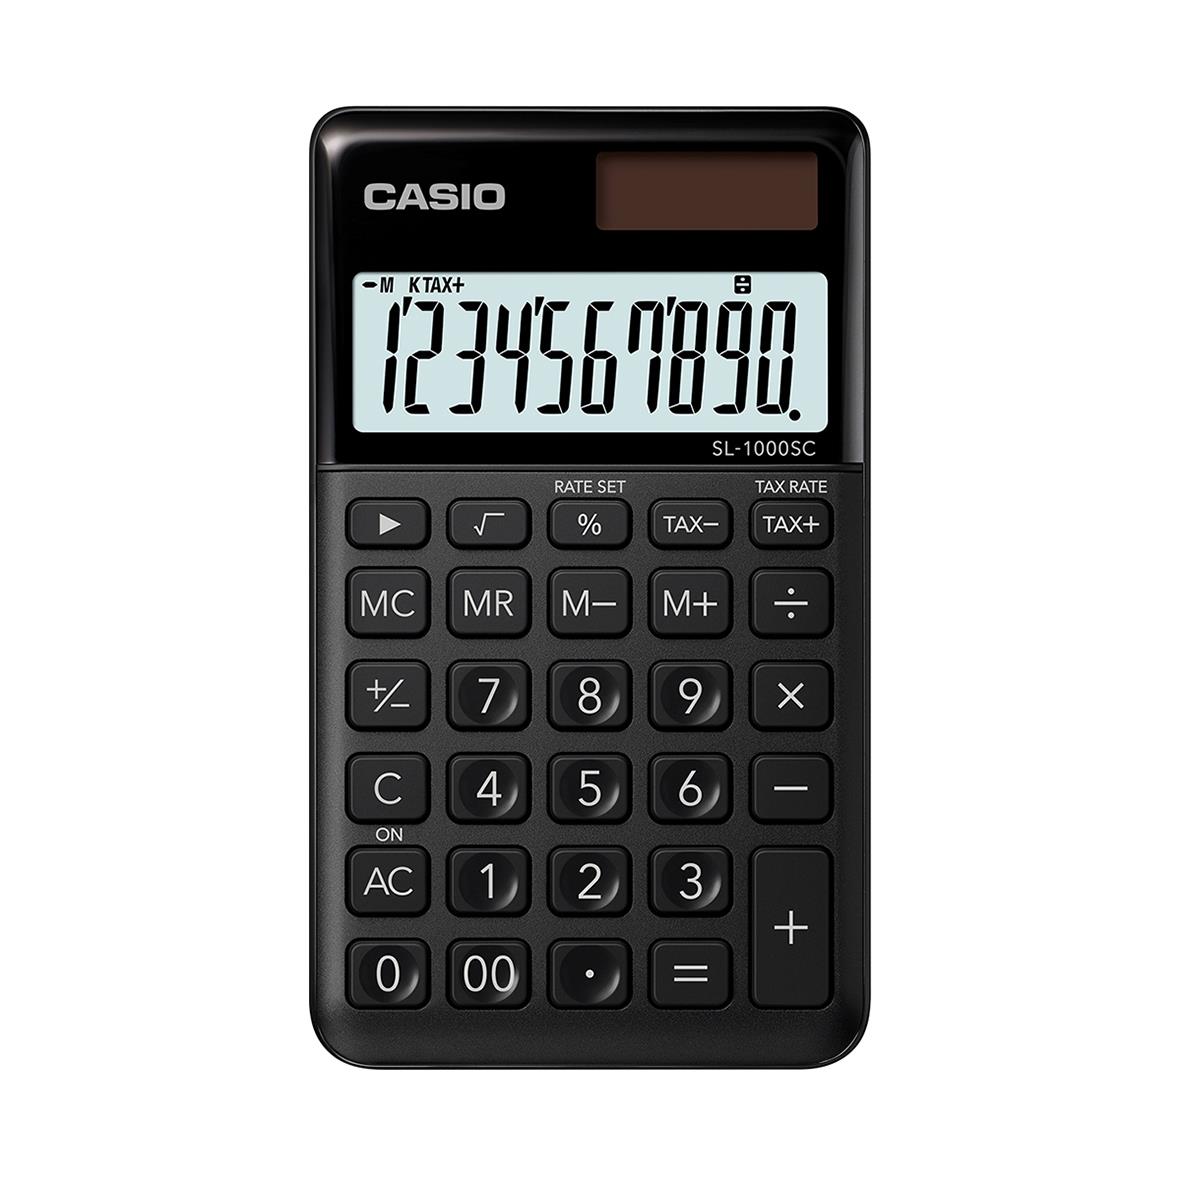 Miniräknare Casio SL-1000SC svart 35141442